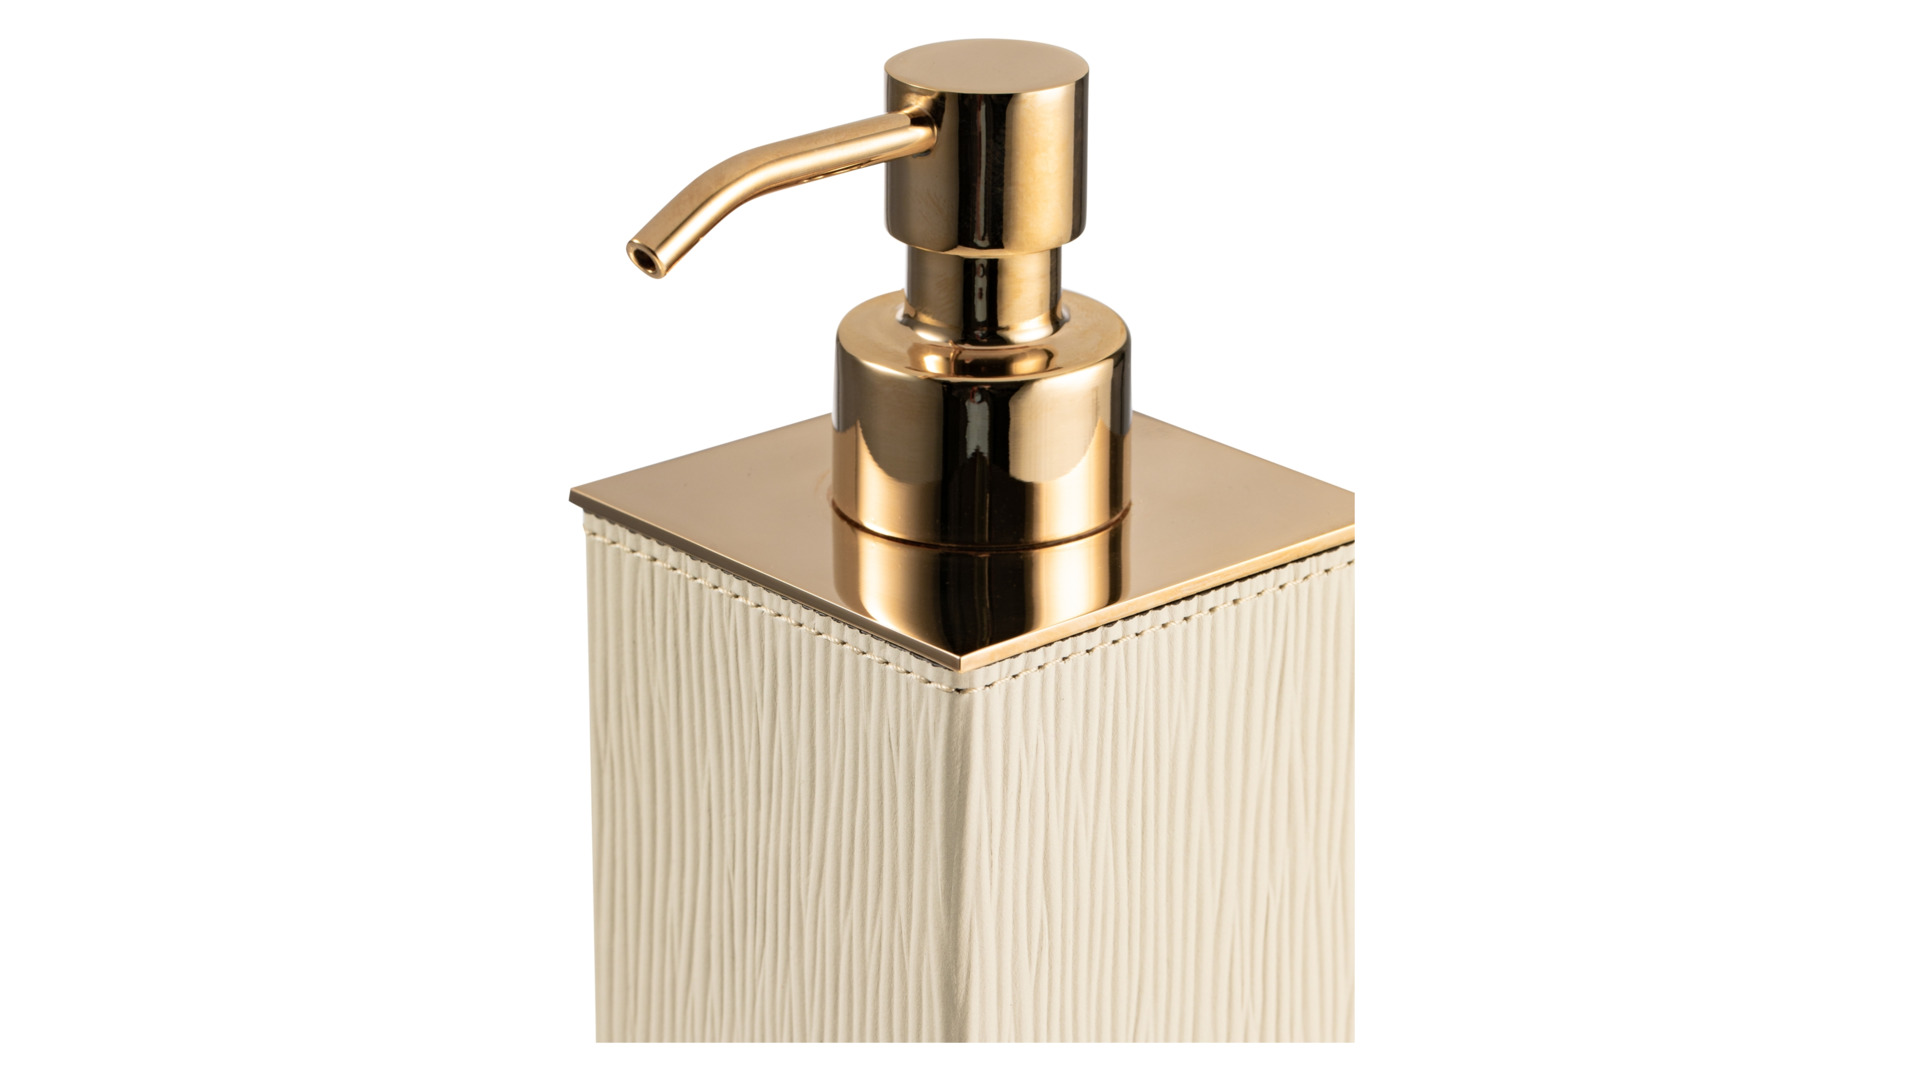 Диспенсер для мыла квадратный Pinetti Посейдон 6х6х16,5 см, кремовый, золотистый